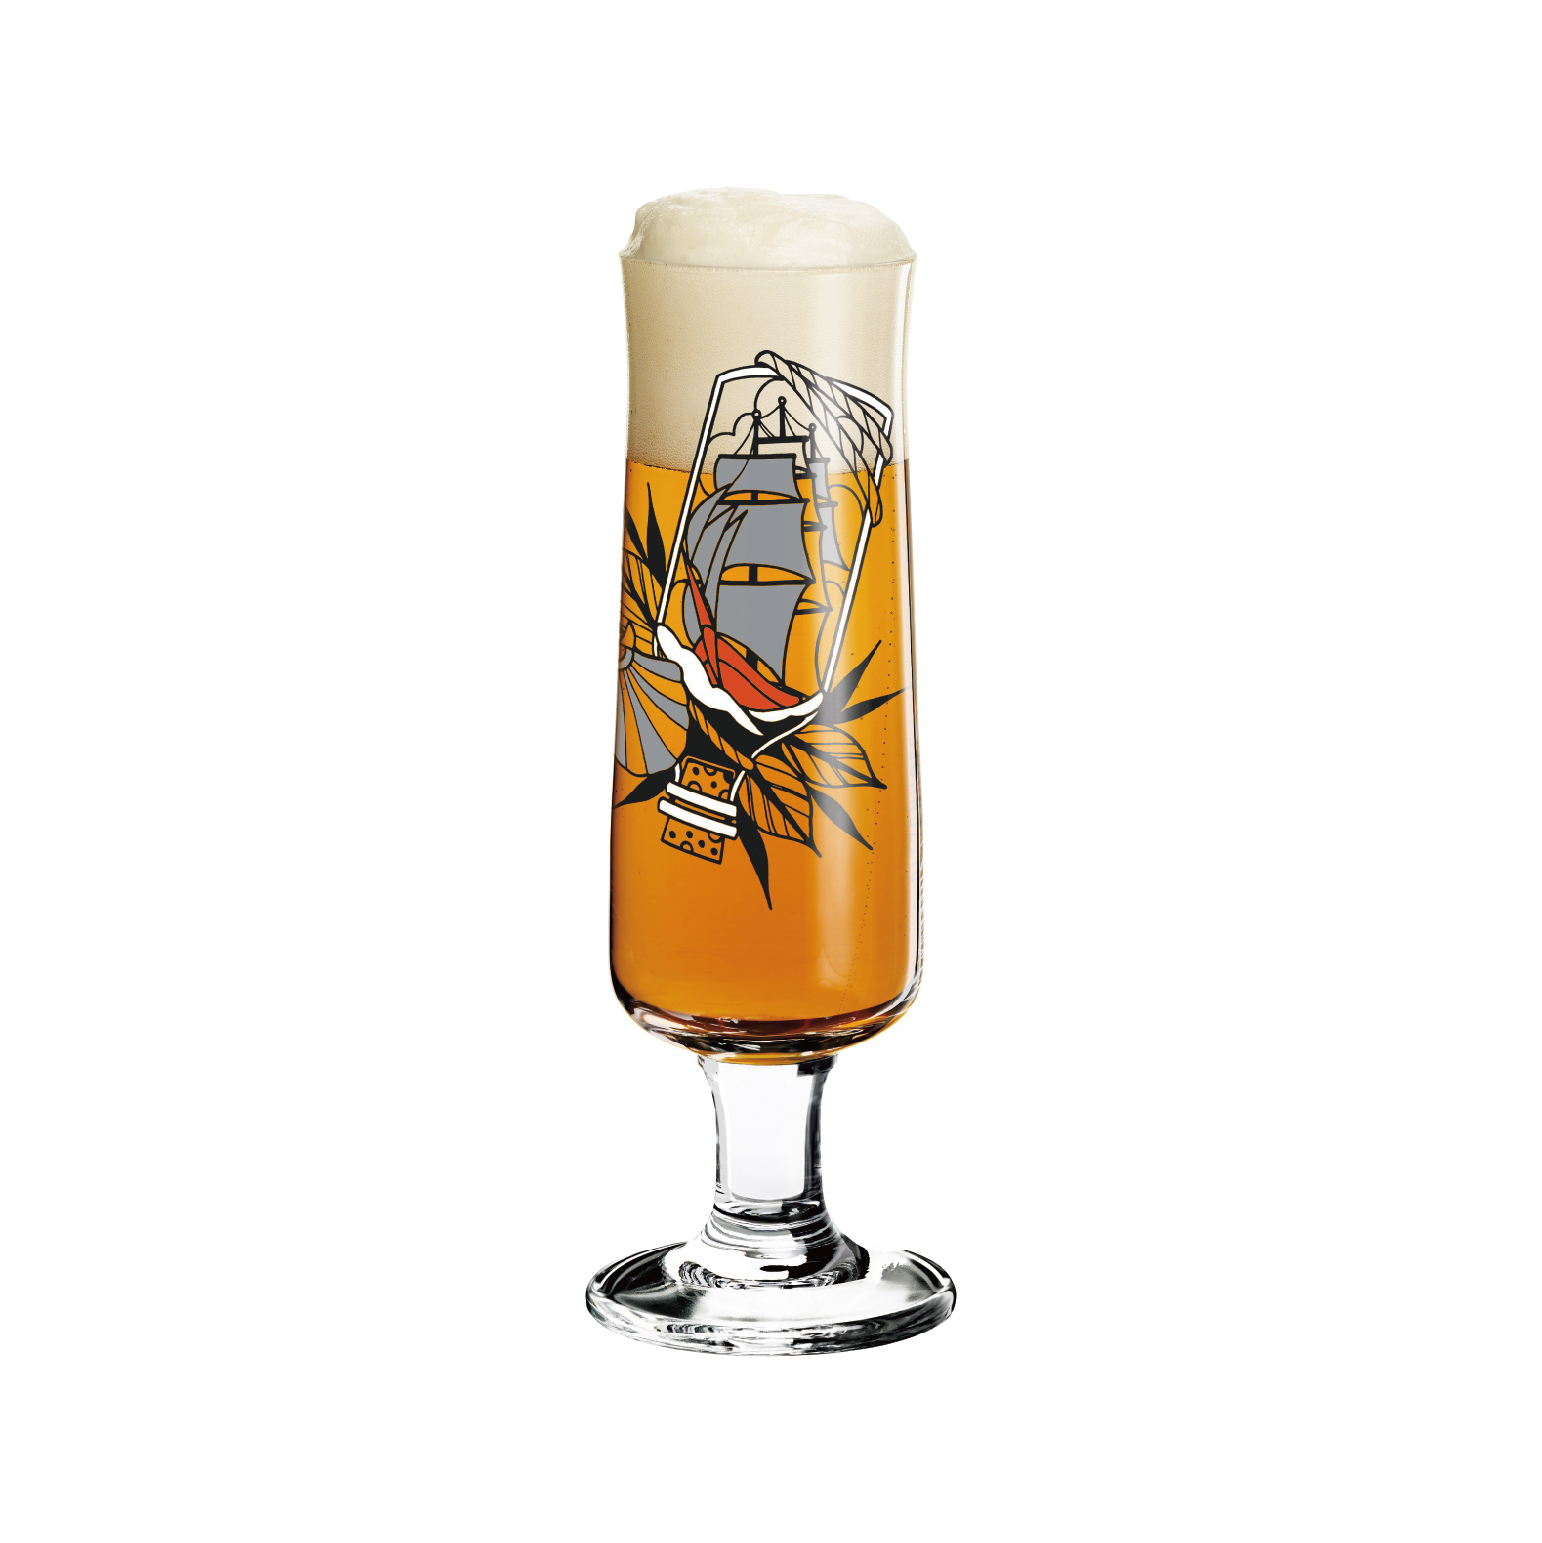 【德國 RITZENHOFF】 新式啤酒杯 -瓶中船-390ML